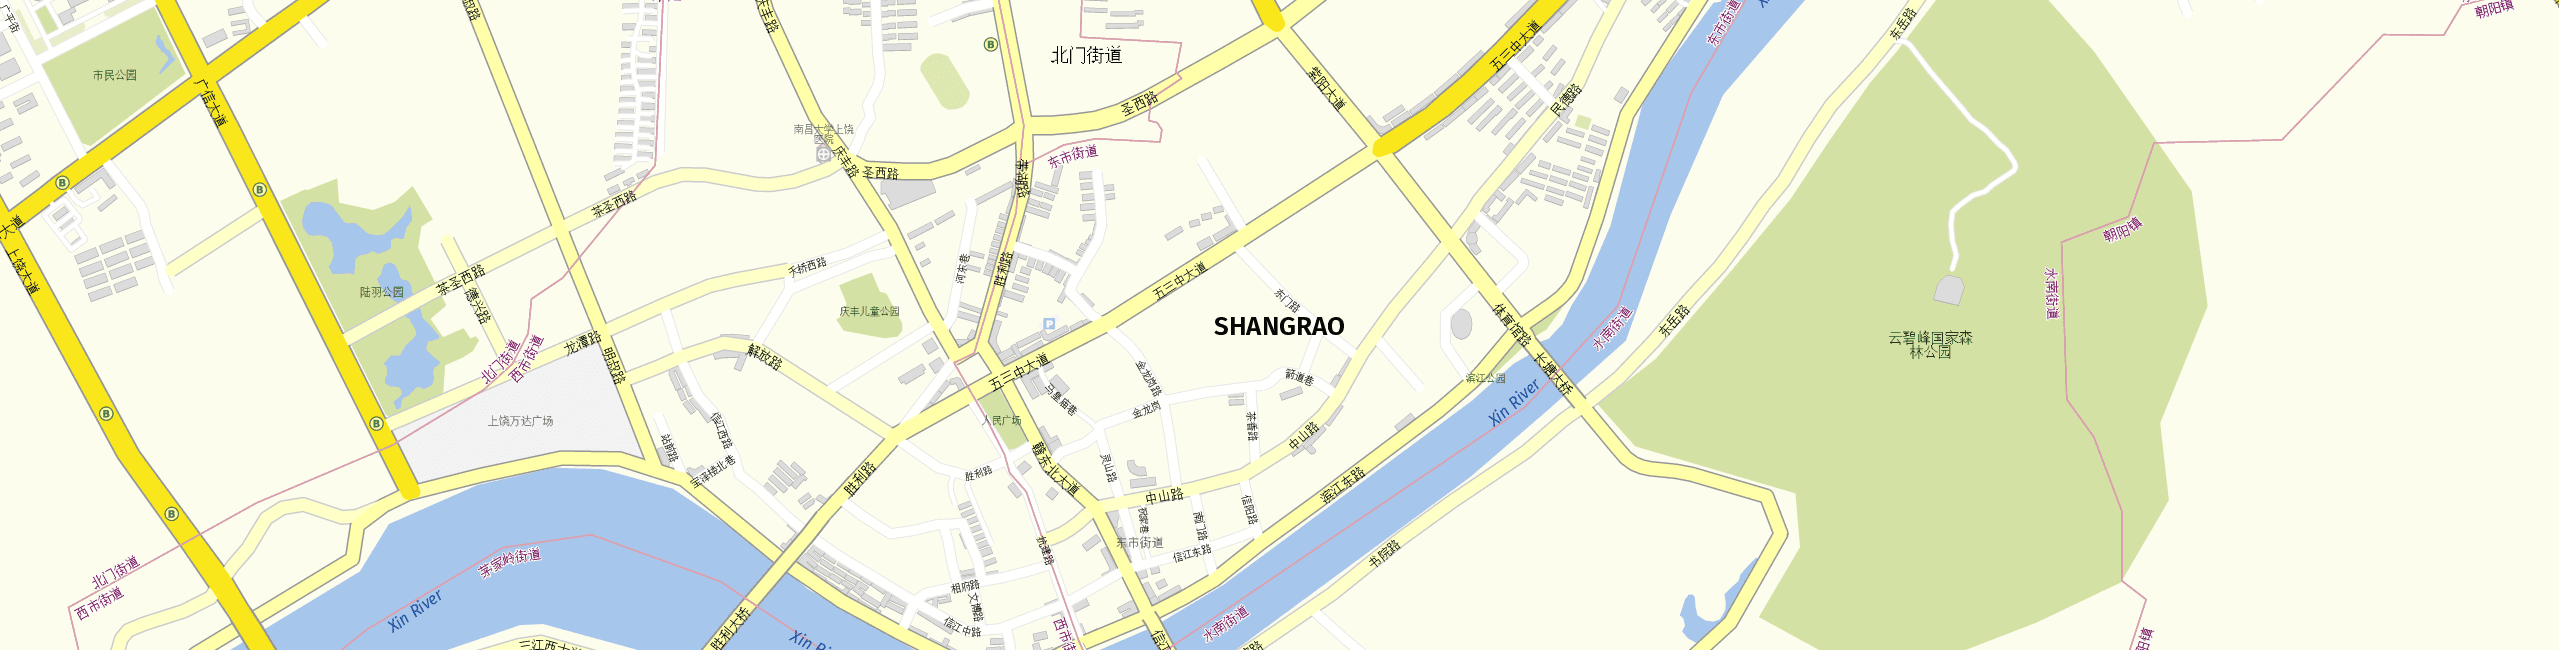 Stadtplan Shangrao zum Downloaden.